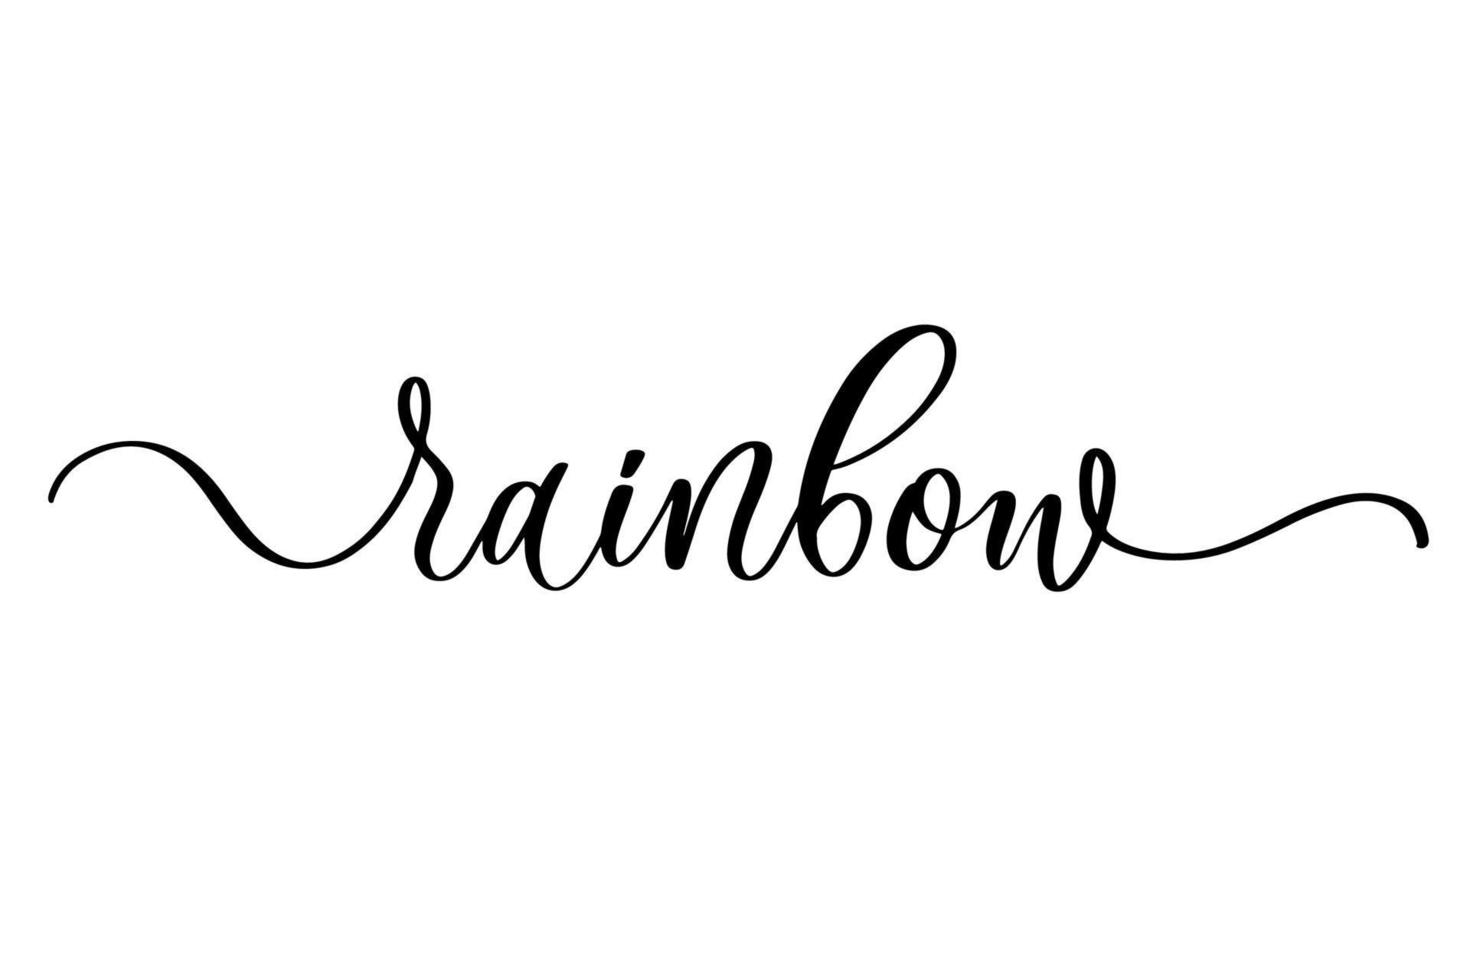 Regenbogen - süßes handgezeichnetes Kinderzimmerplakat mit Schriftzug im skandinavischen Stil. vektor